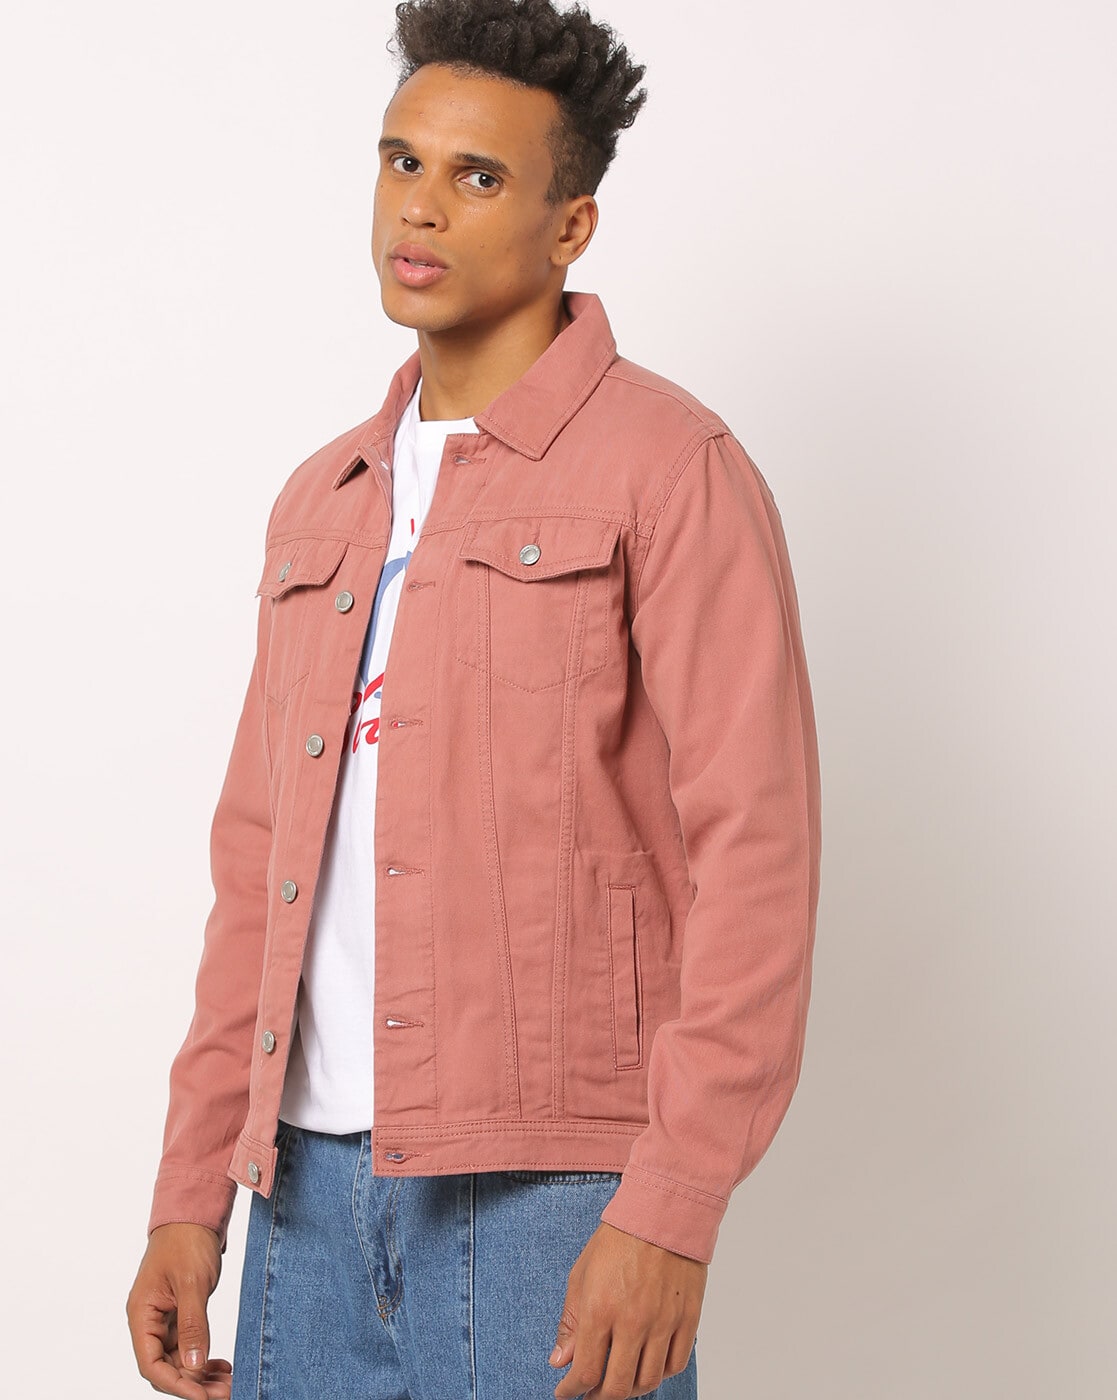 Buy Pink Denim Jacket for Women Online